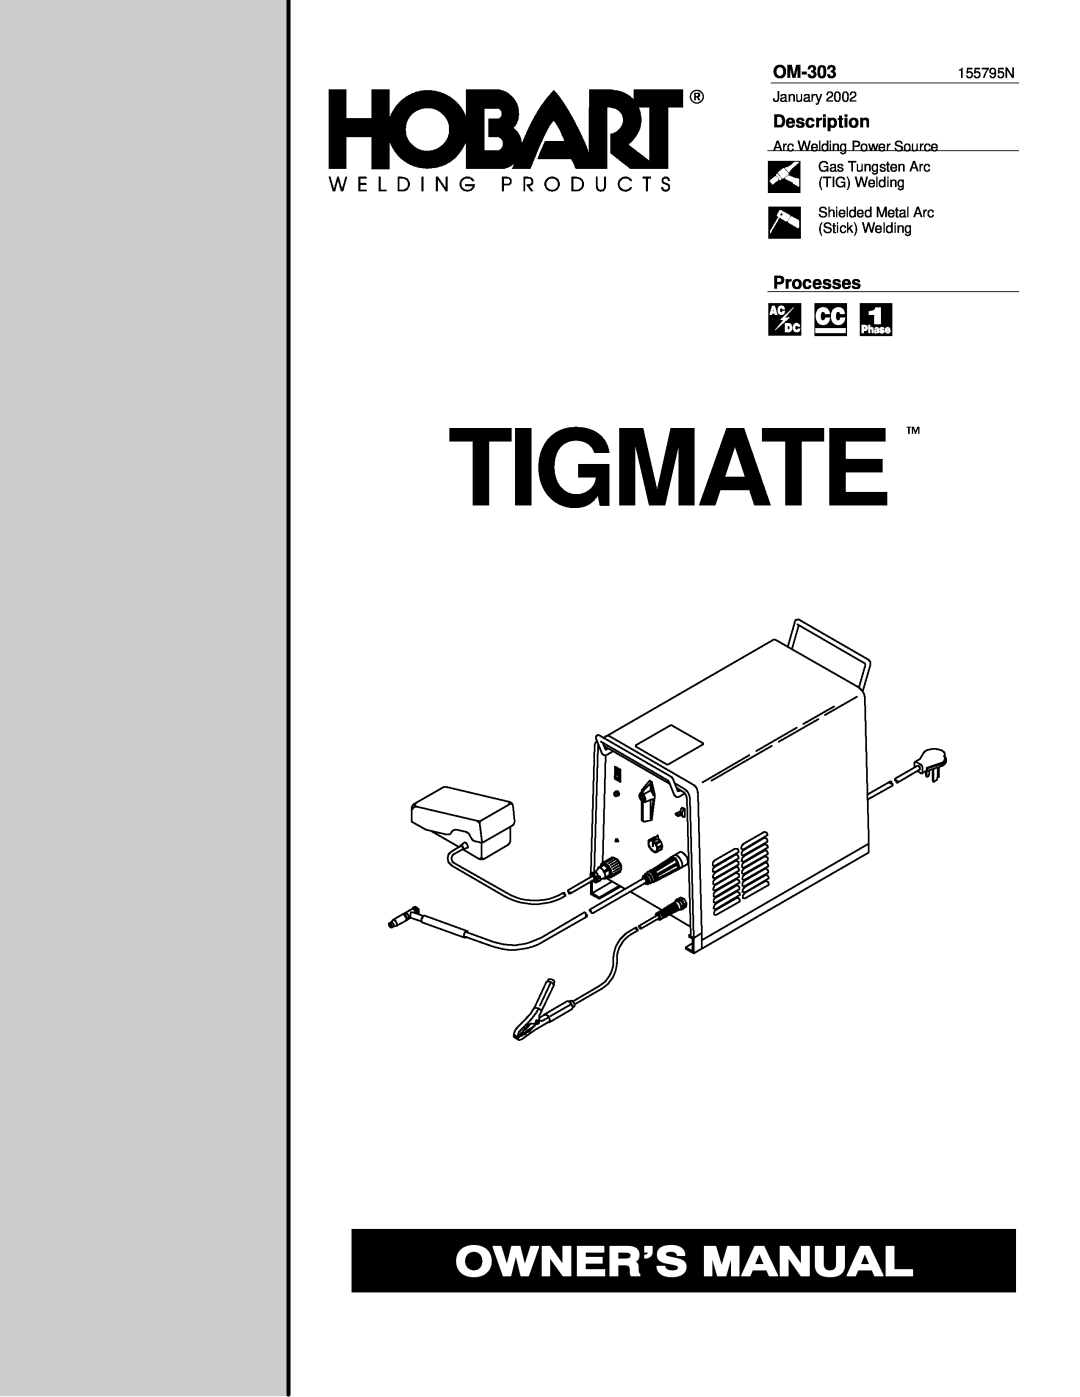 Hobart manual Tigmate , OM-303155795N, Description, Processes 